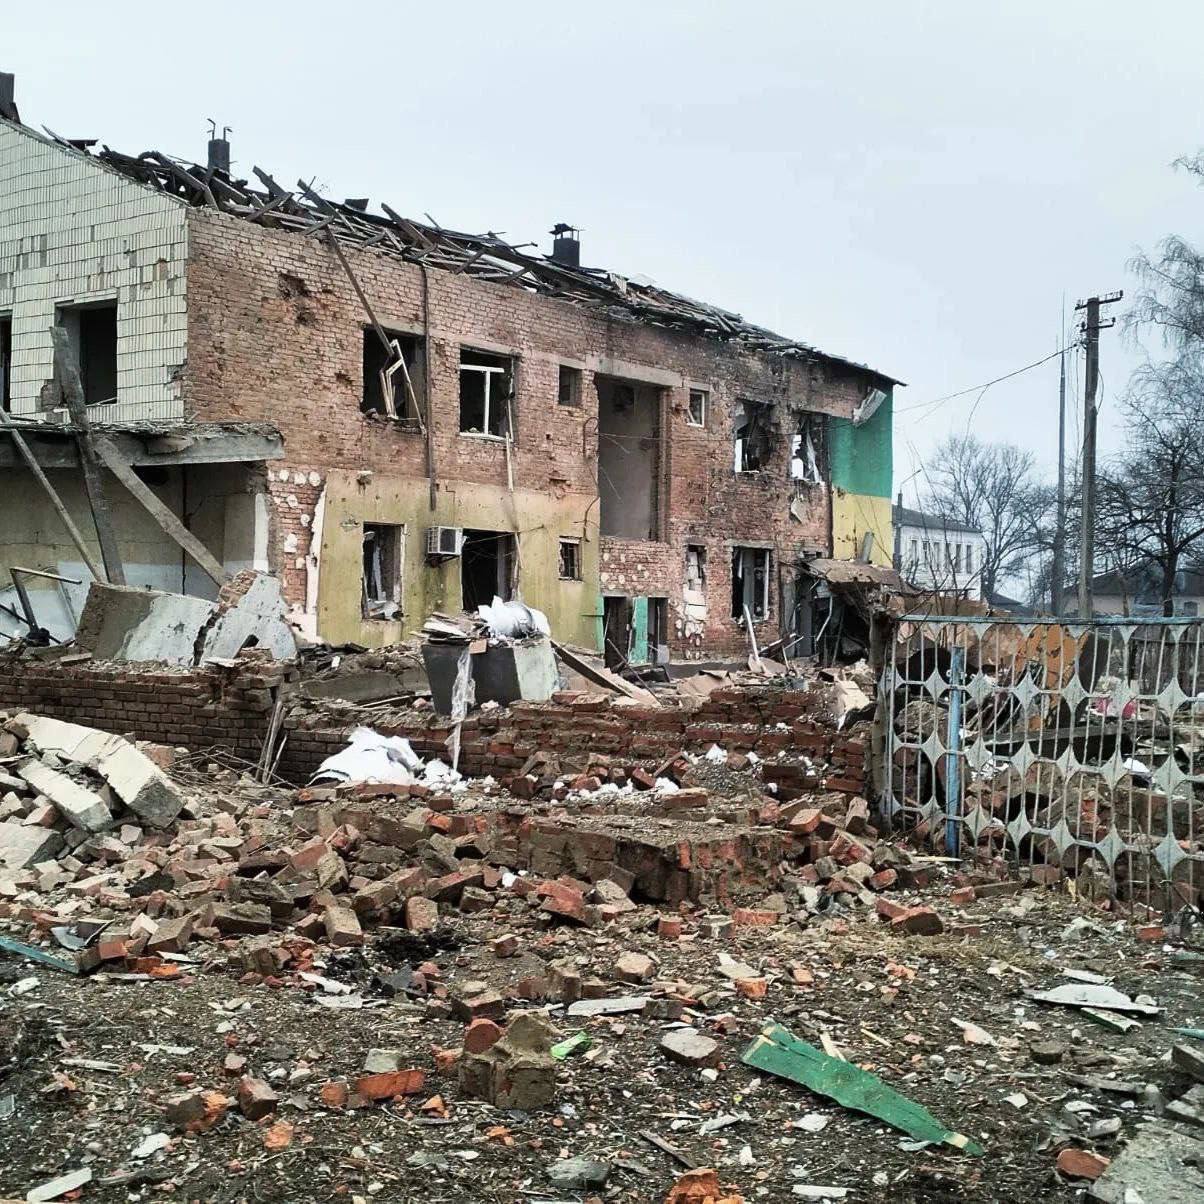 Армія РФ розбомбила центр селища Велика Писарівка на Сумщині: деталі